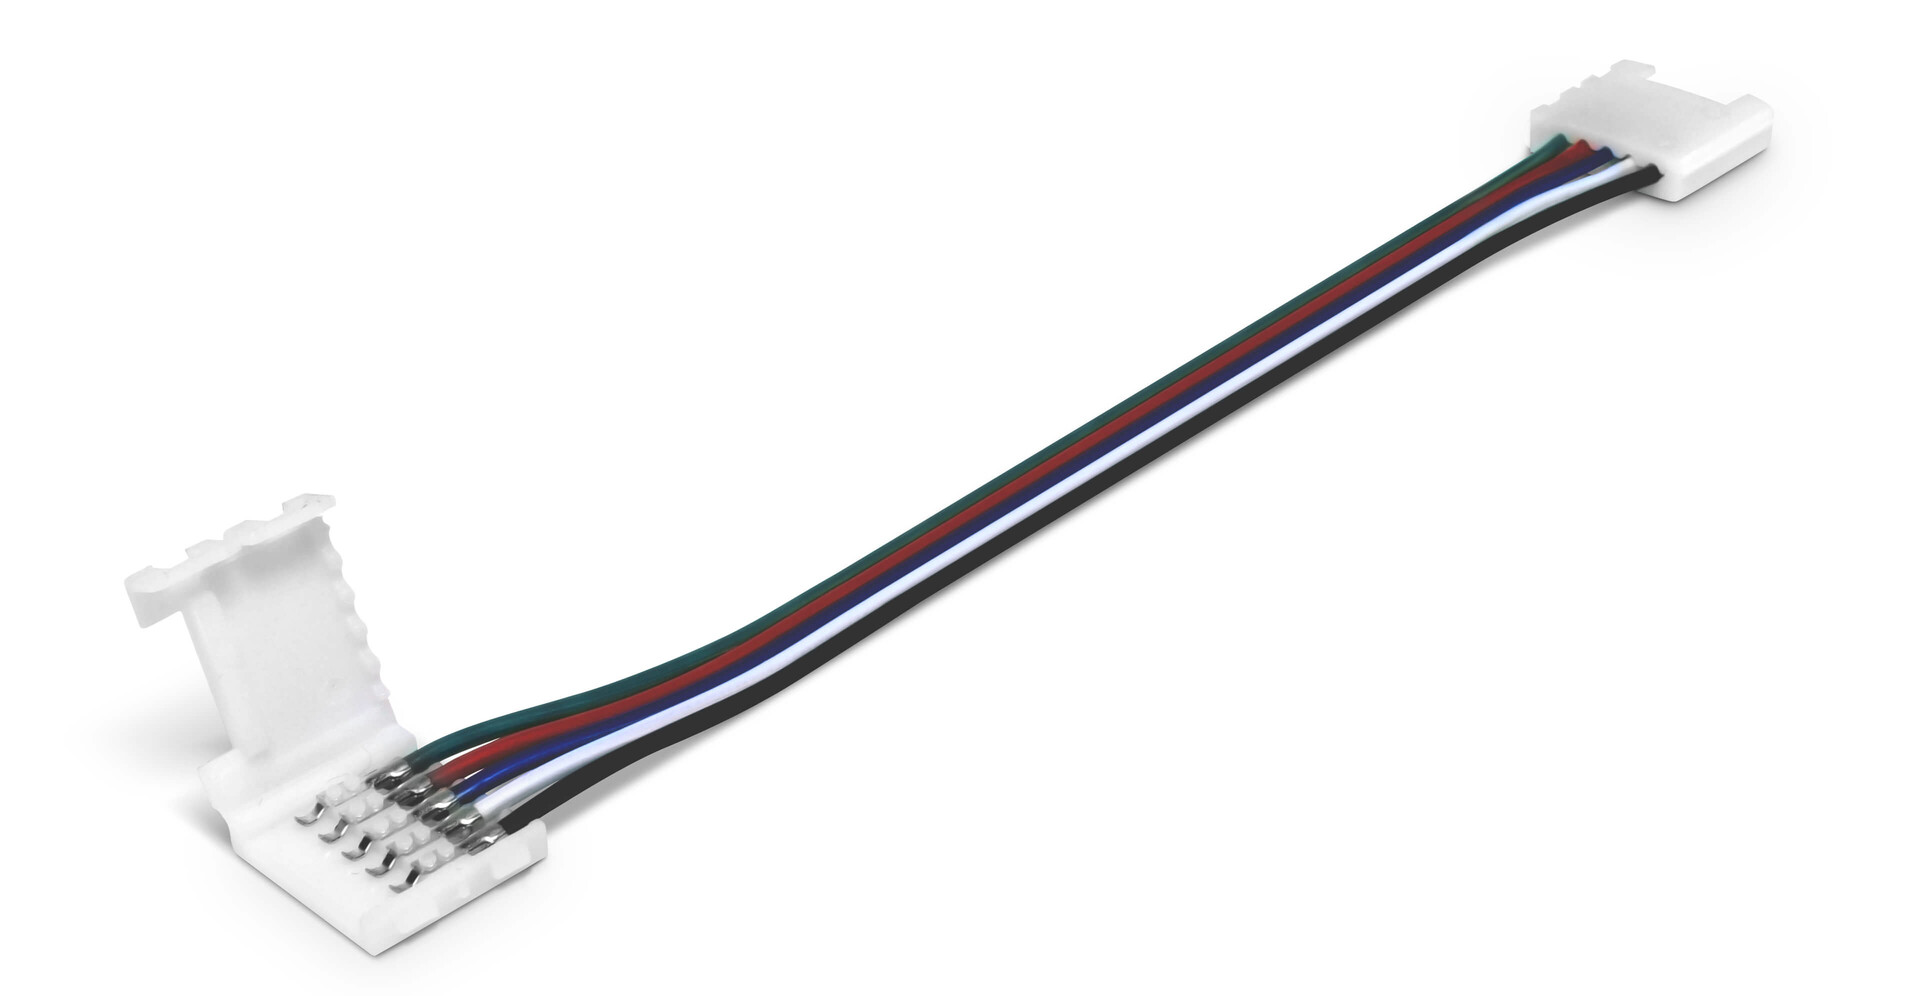 LED Universum LED Streifen Kabel mit Adjektiven und Adverben Klippbefestigung Schnellverbinder für RGBW LED Streifen